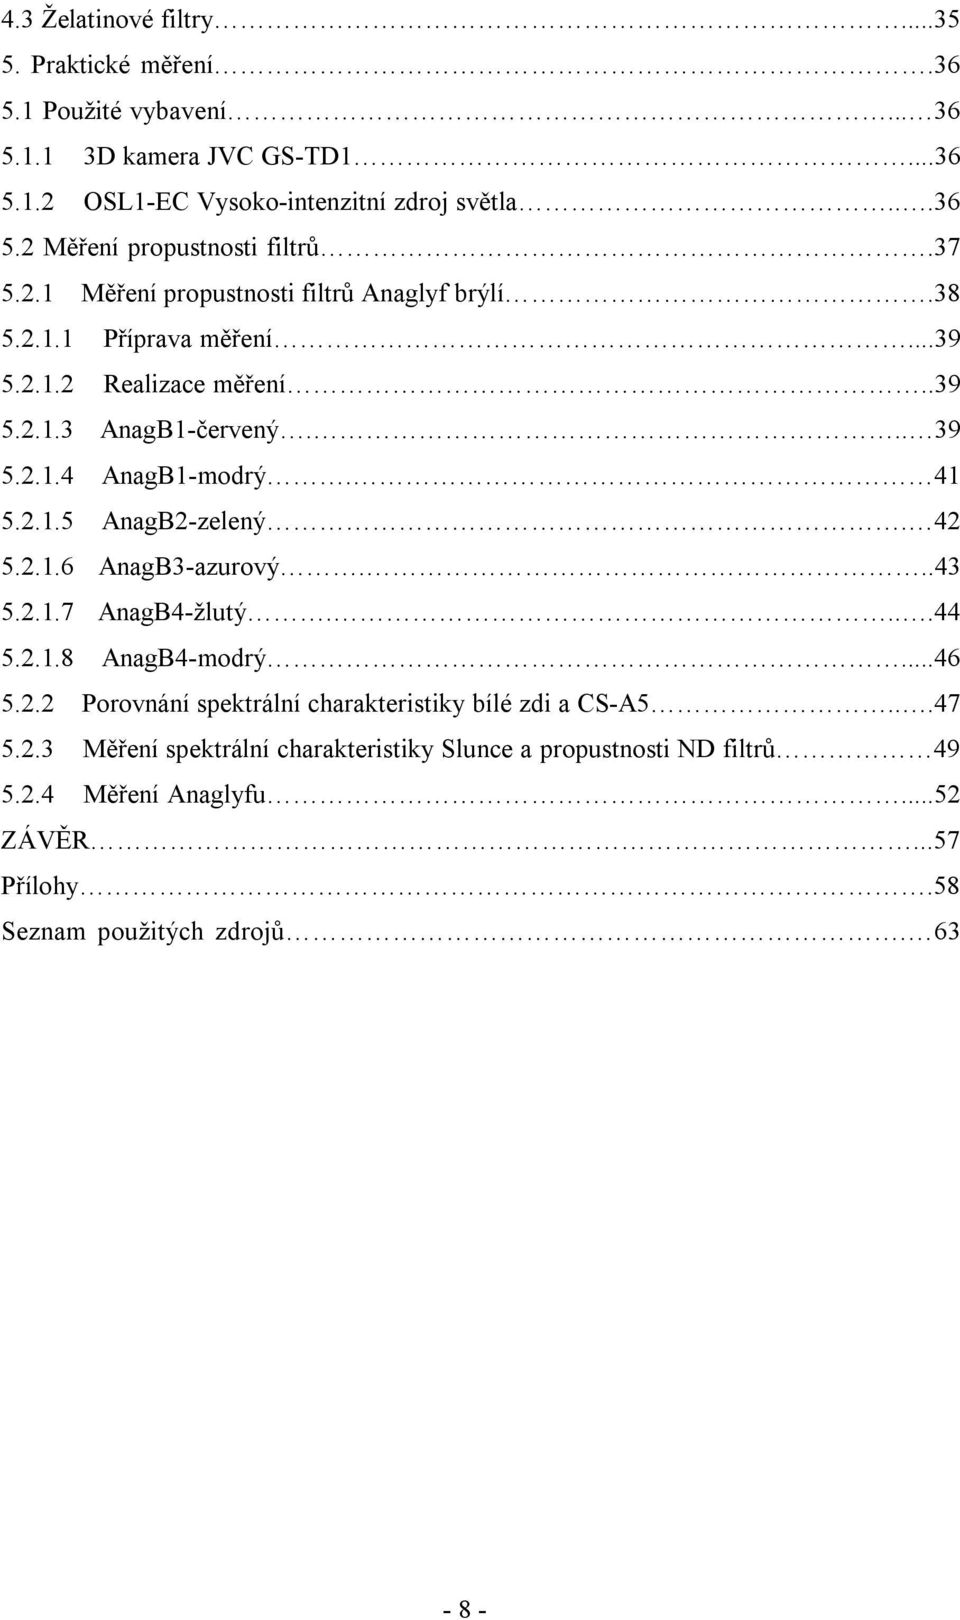 42 5.2.1.6 AnagB3-azurový...43 5.2.1.7 AnagB4-žlutý....44 5.2.1.8 AnagB4-modrý...46 5.2.2 Porovnání spektrální charakteristiky bílé zdi a CS-A5...47 5.2.3 Měření spektrální charakteristiky Slunce a propustnosti ND filtrů 49 5.